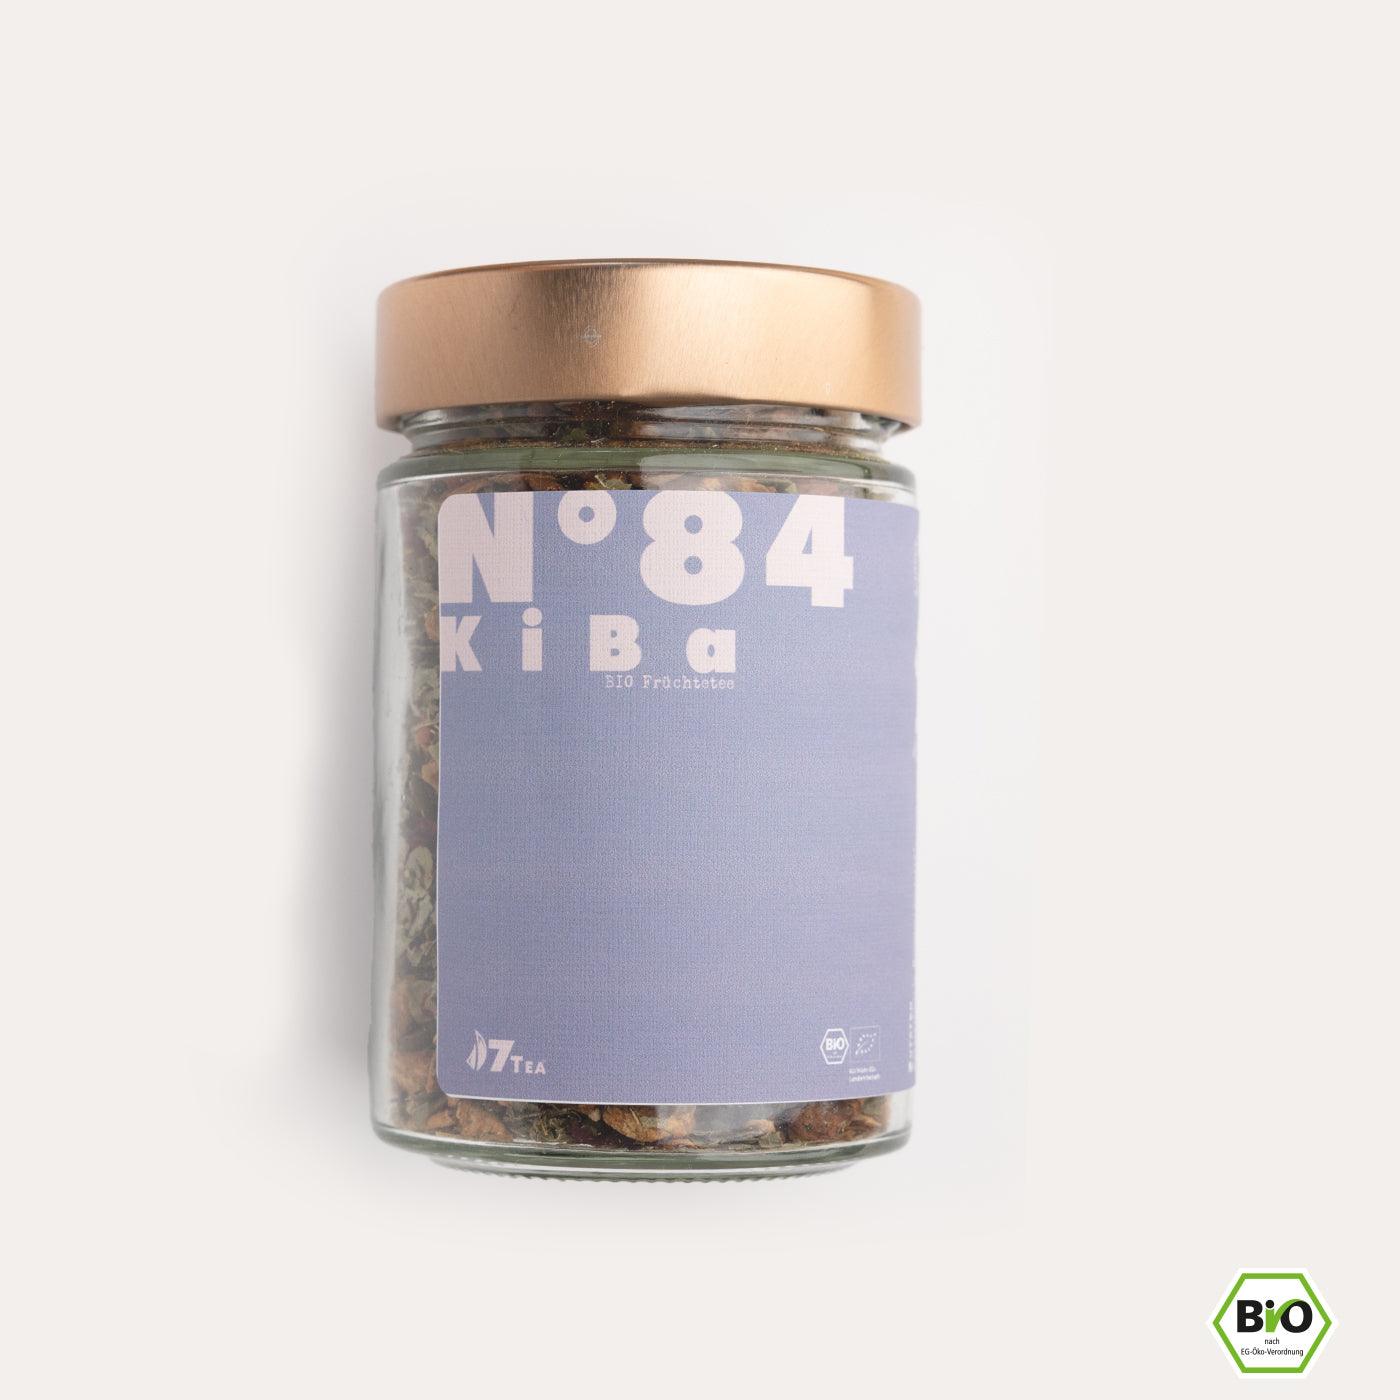 N°84 | KiBa - Apfel, Kirsche & Banane - 7Tea® Bio-Tee Onlineshop